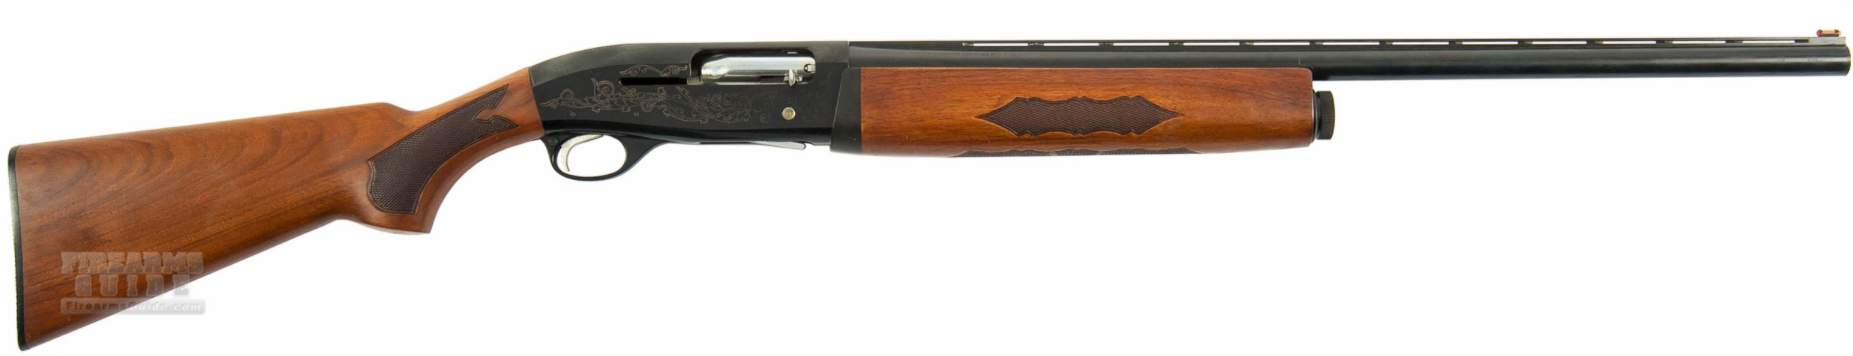 Ithaca Gun XL 300.